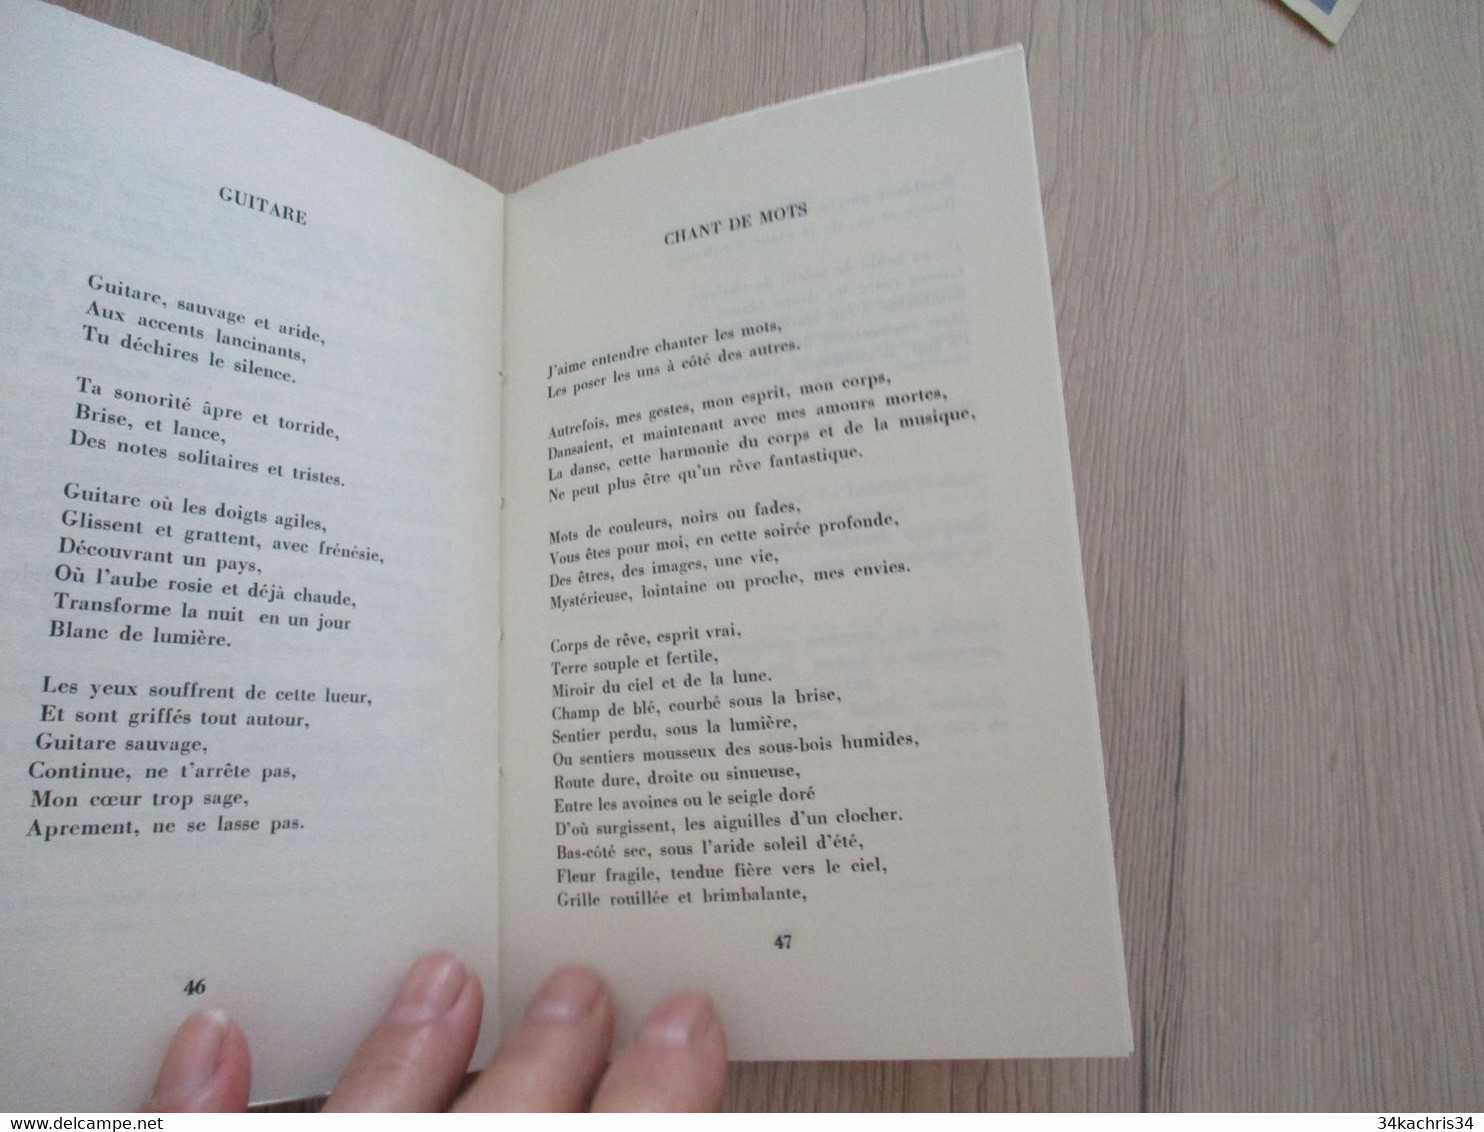 Poèsie chez EdIt Marais Arlette Rives Chair Vive poème en édition originale + 1 envoi + 1 poème original Sybellus